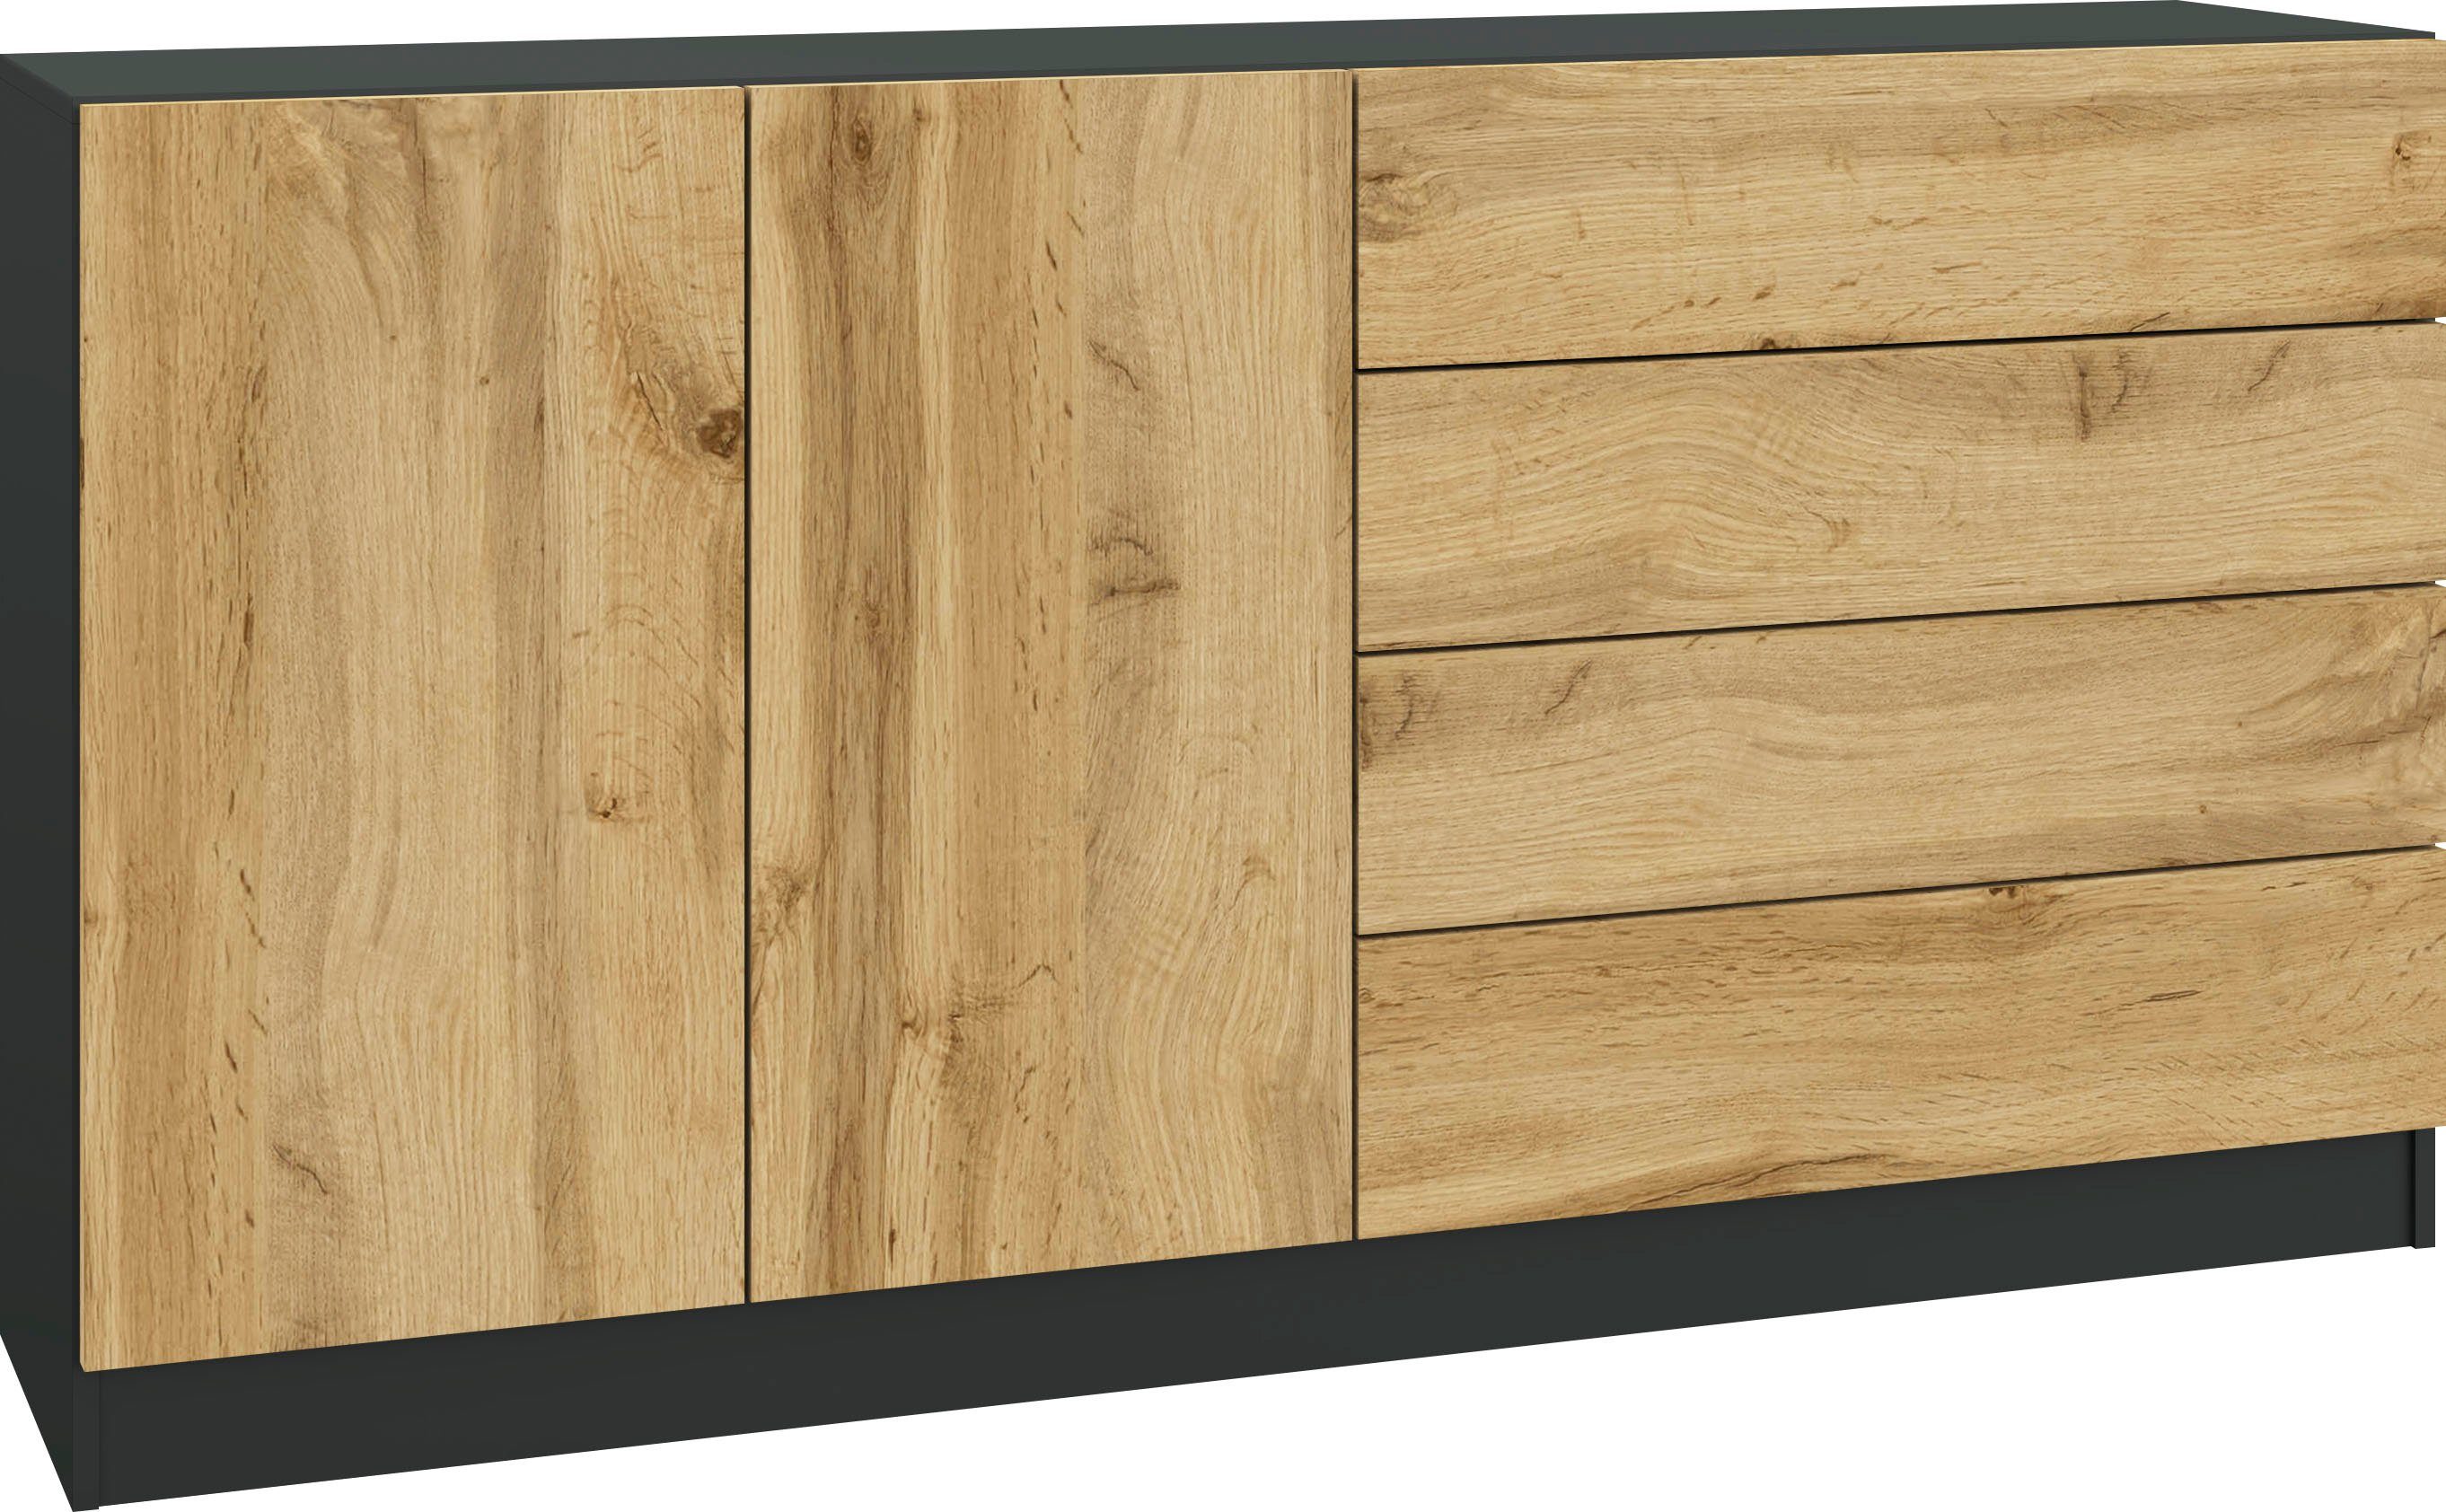 Breite Sideboard Vaasa, schwarz borchardt matt/eichefarben Möbel wotan cm 152